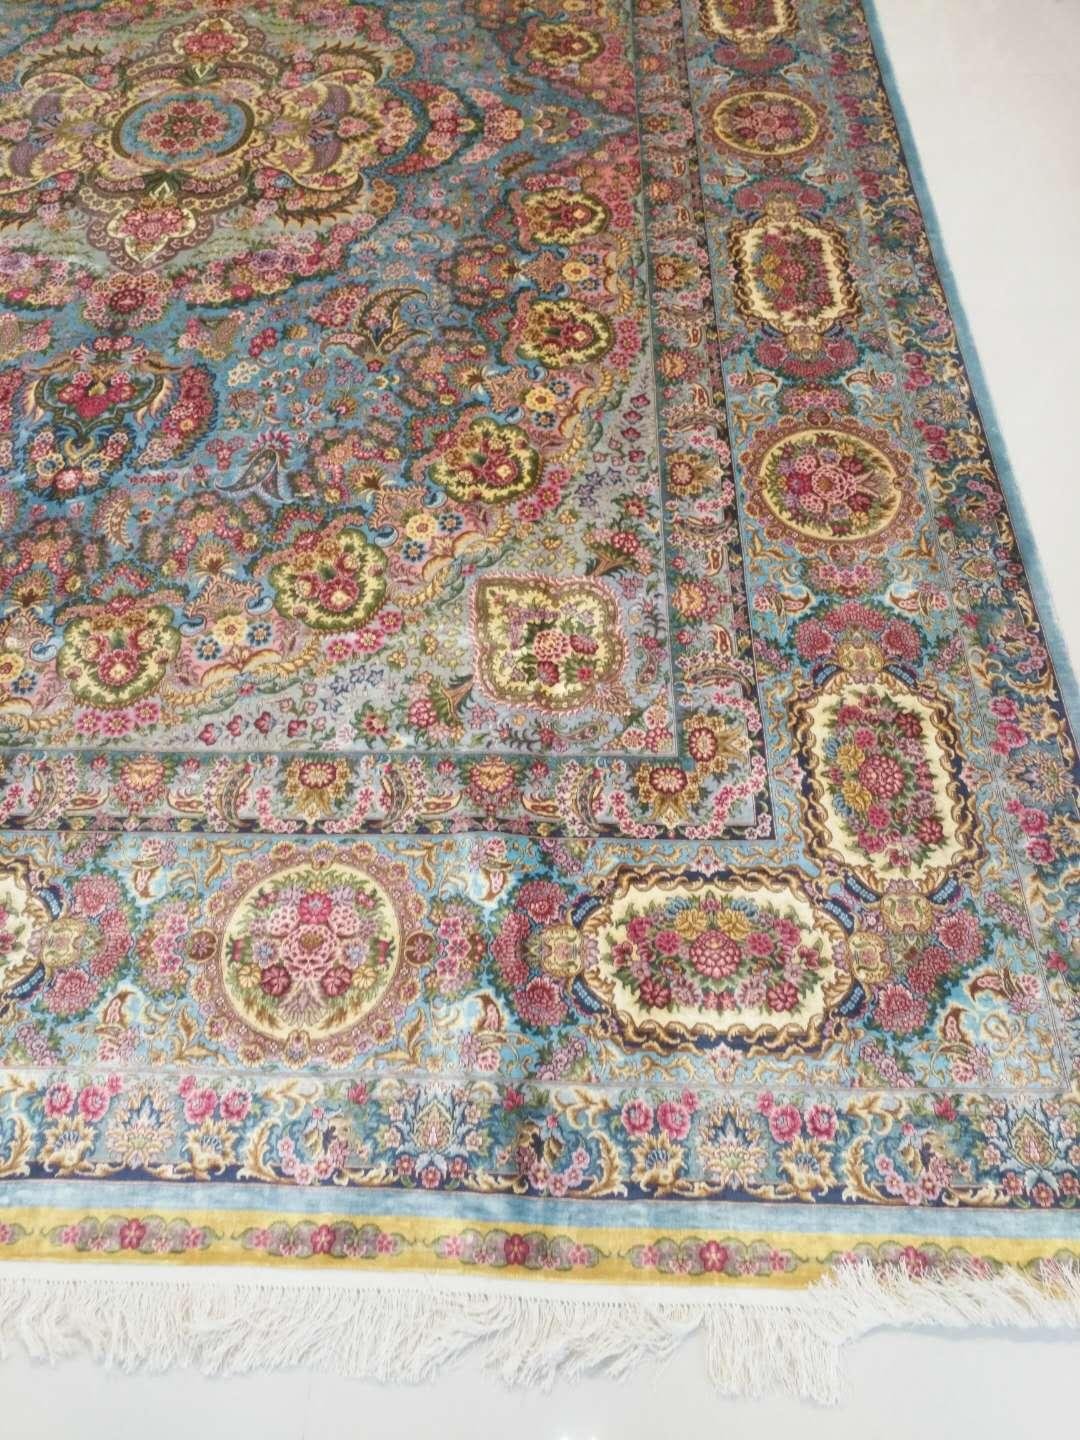 中国好的手工真丝地毯生产厂家是淅川县亚美地毯厂 5